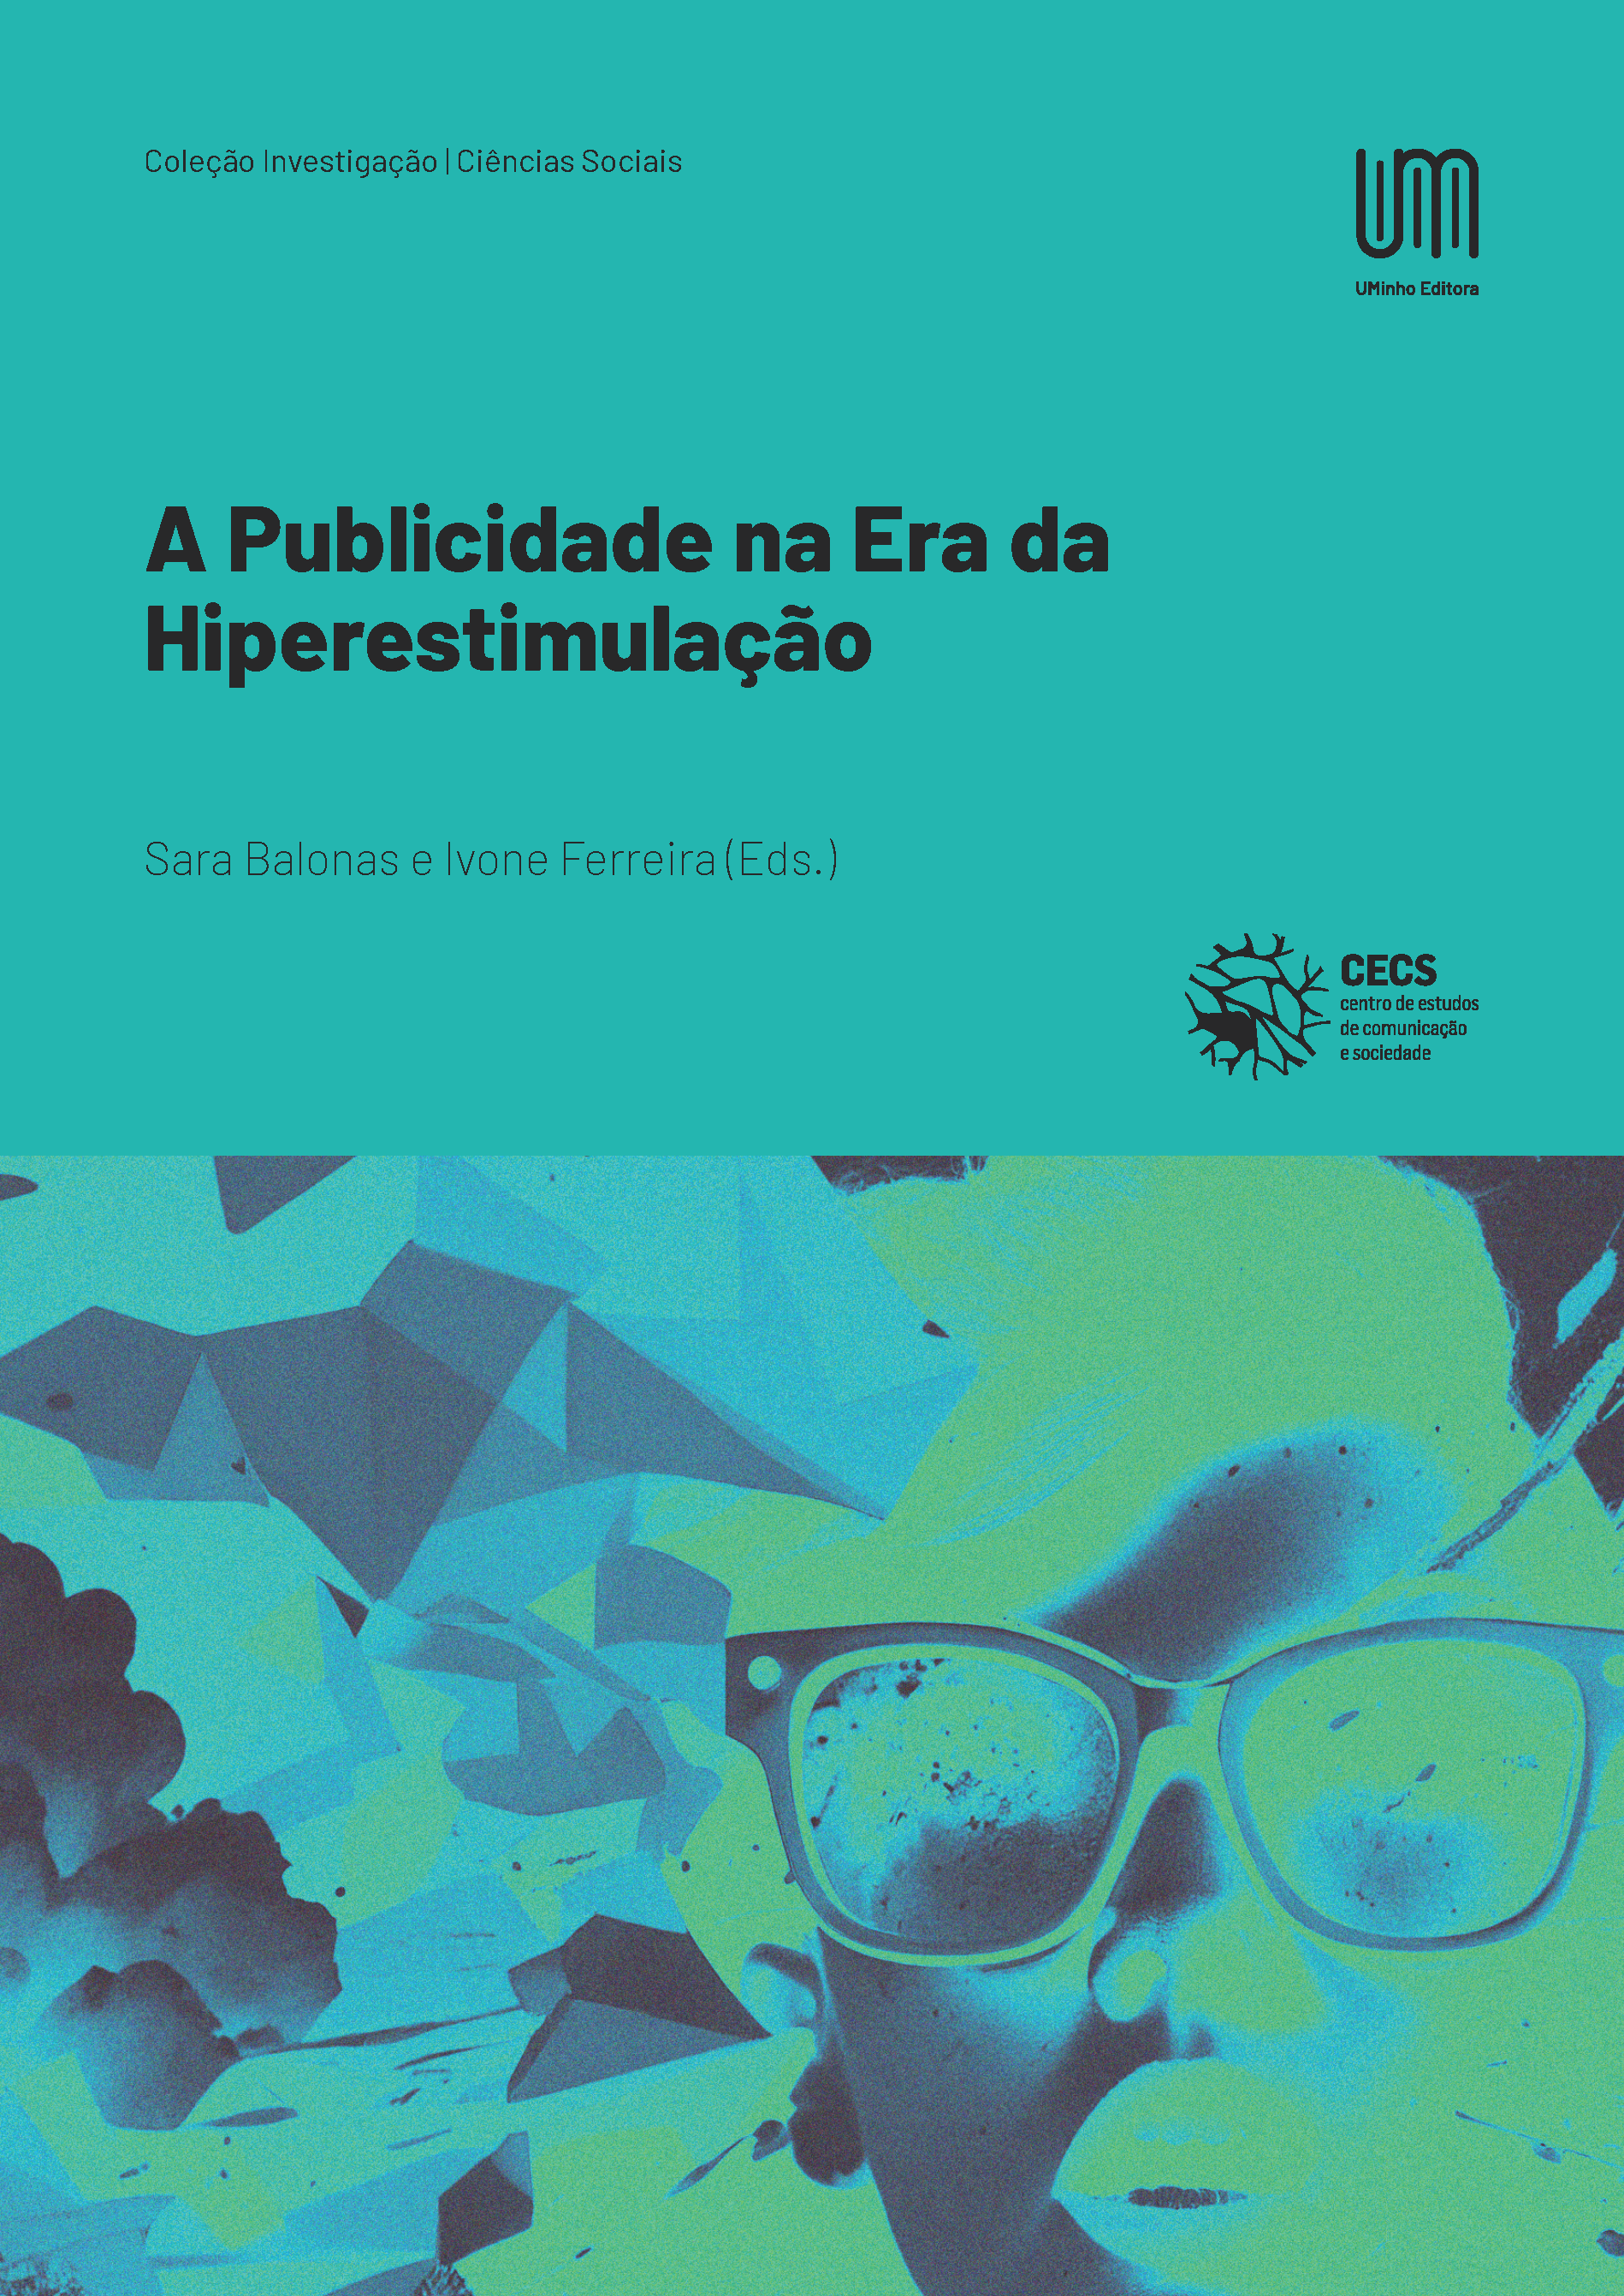 A Publicidade na Era da Hiperestimulação - UMinho Editora